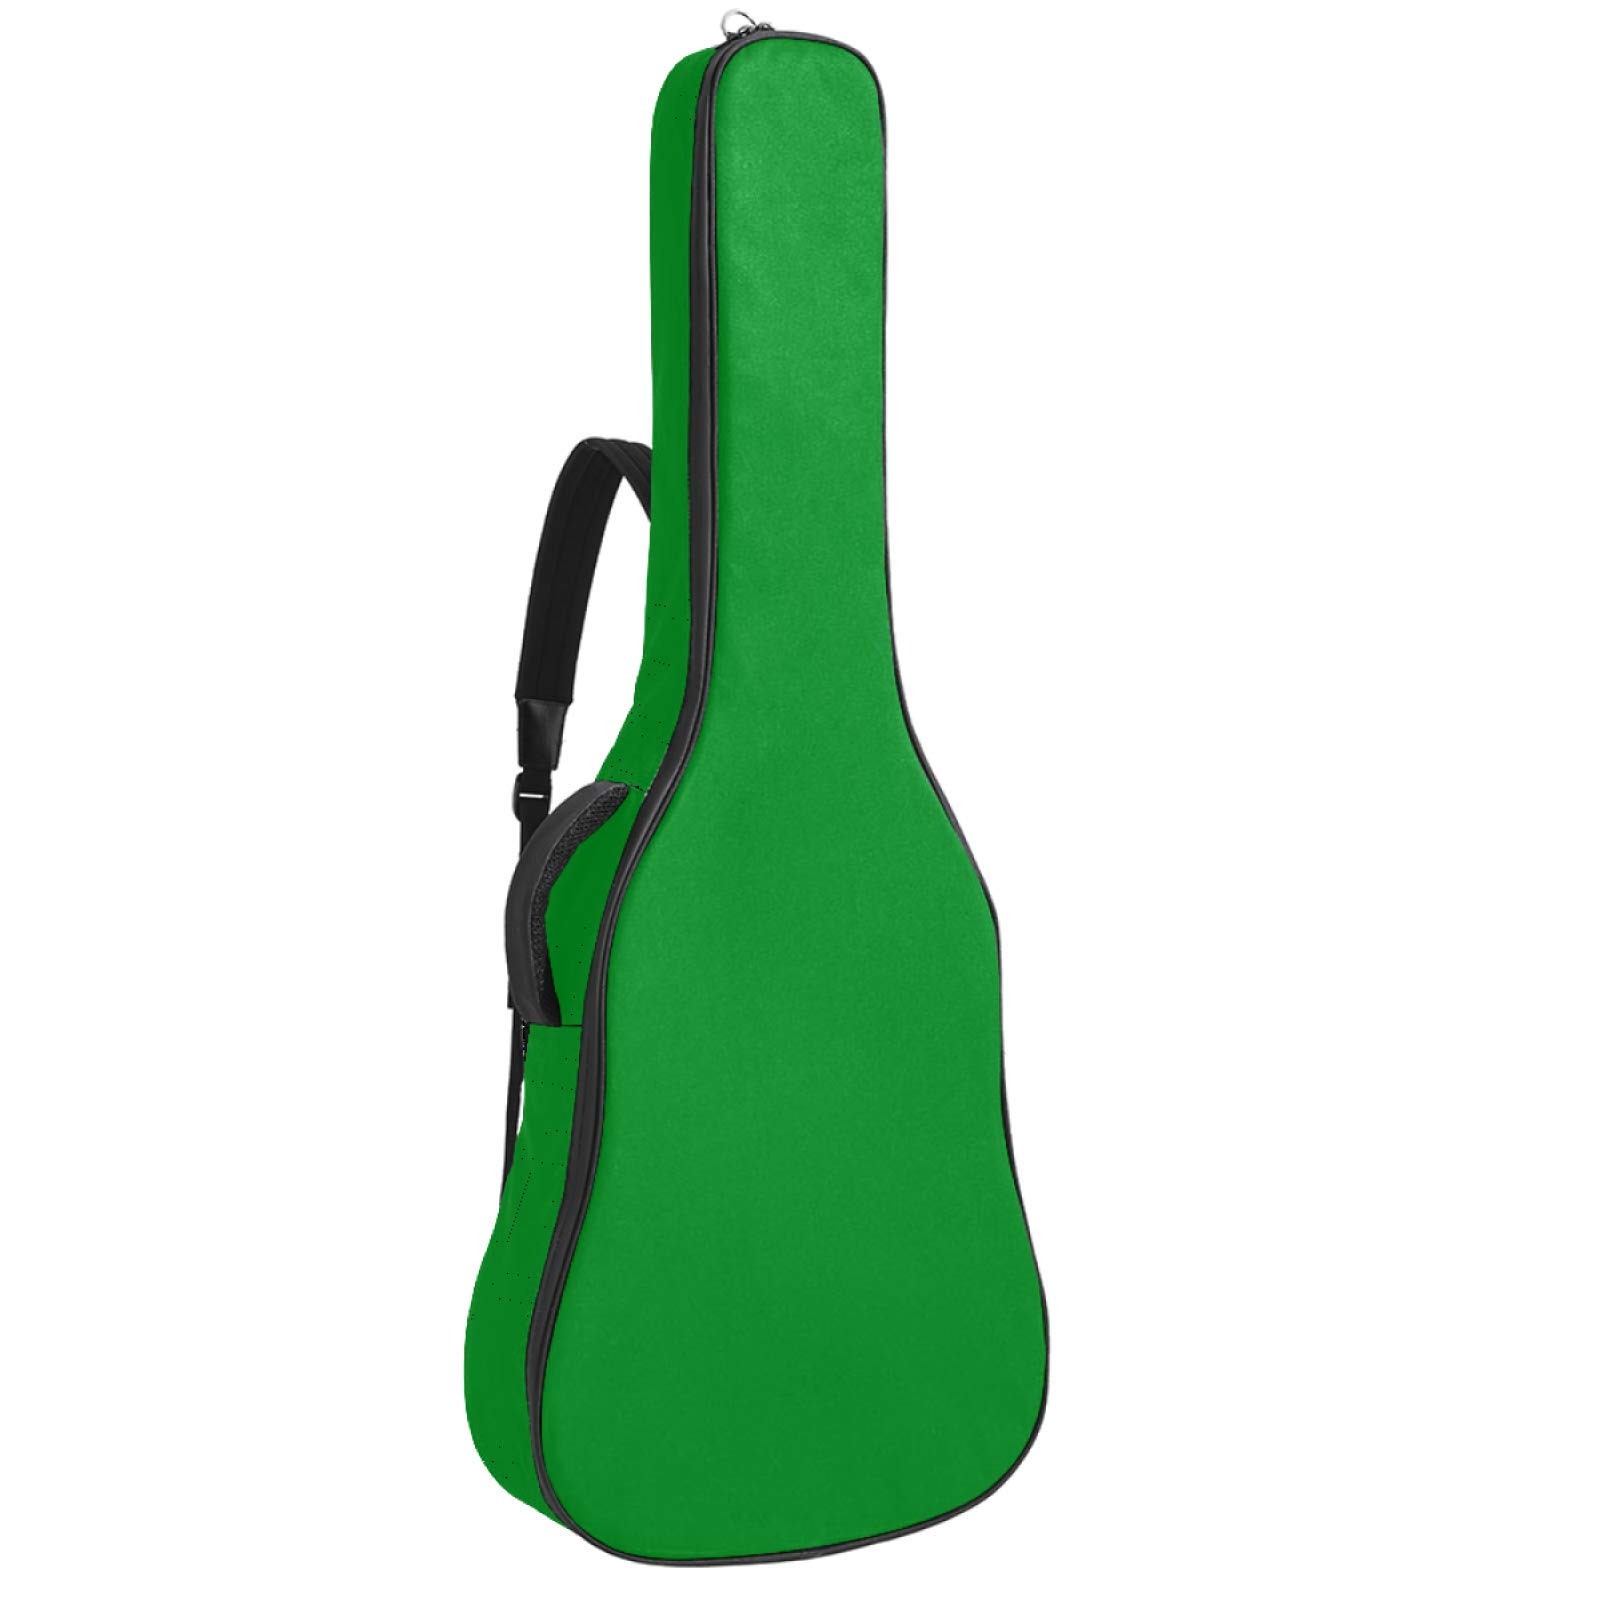 Gitarrentasche mit Reißverschluss, wasserdicht, weich, für Bassgitarre, Akustik- und klassische Folk-Gitarre, reine pflanzliche grüne Farbe